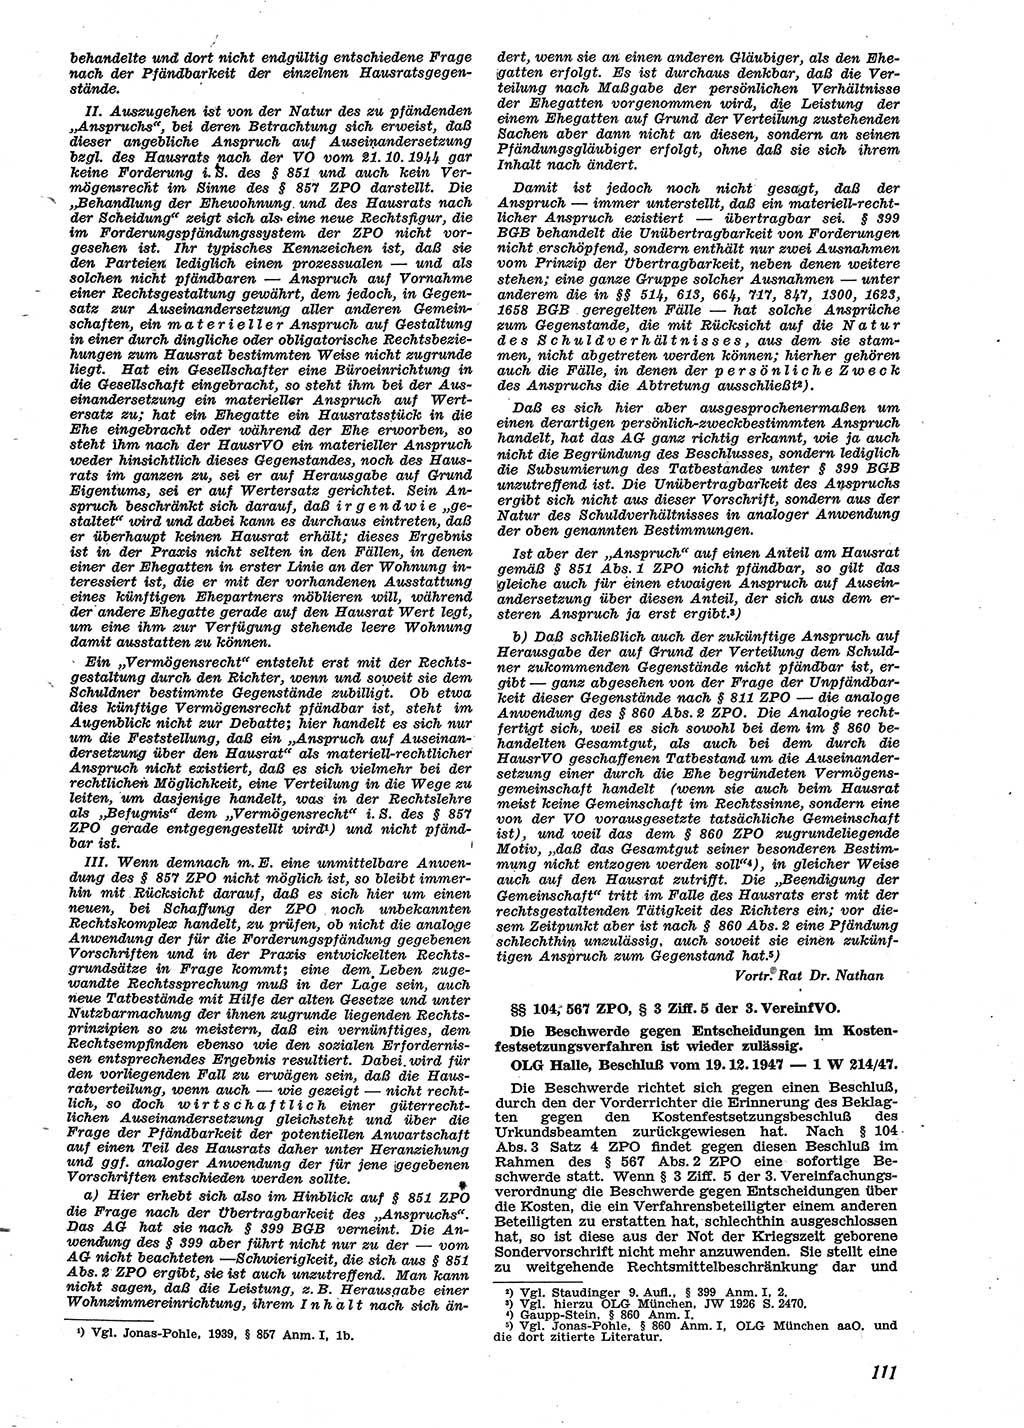 Neue Justiz (NJ), Zeitschrift für Recht und Rechtswissenschaft [Sowjetische Besatzungszone (SBZ) Deutschland], 2. Jahrgang 1948, Seite 111 (NJ SBZ Dtl. 1948, S. 111)